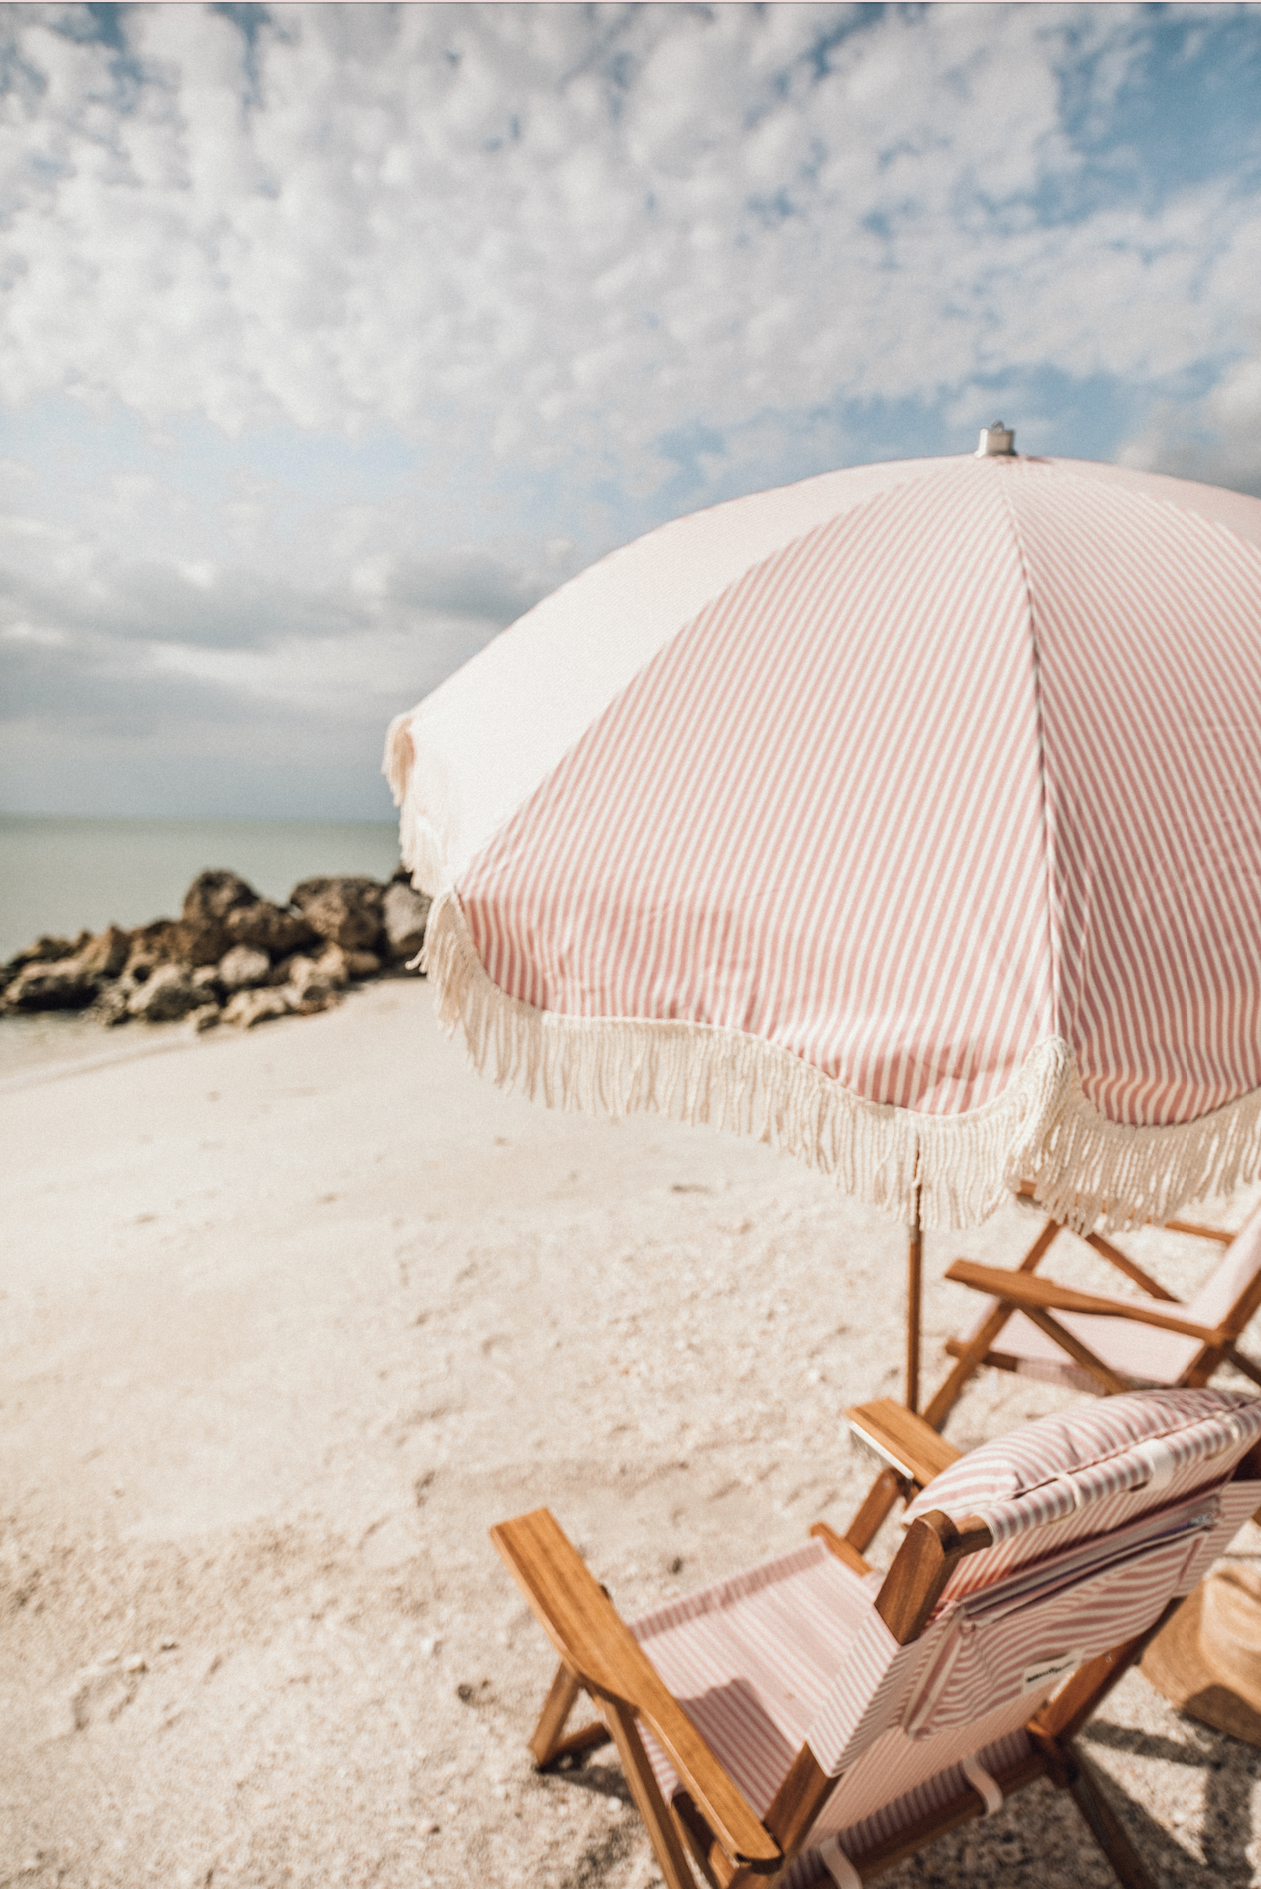 Lauren's Pink Stripe Premium Beach Umbrella